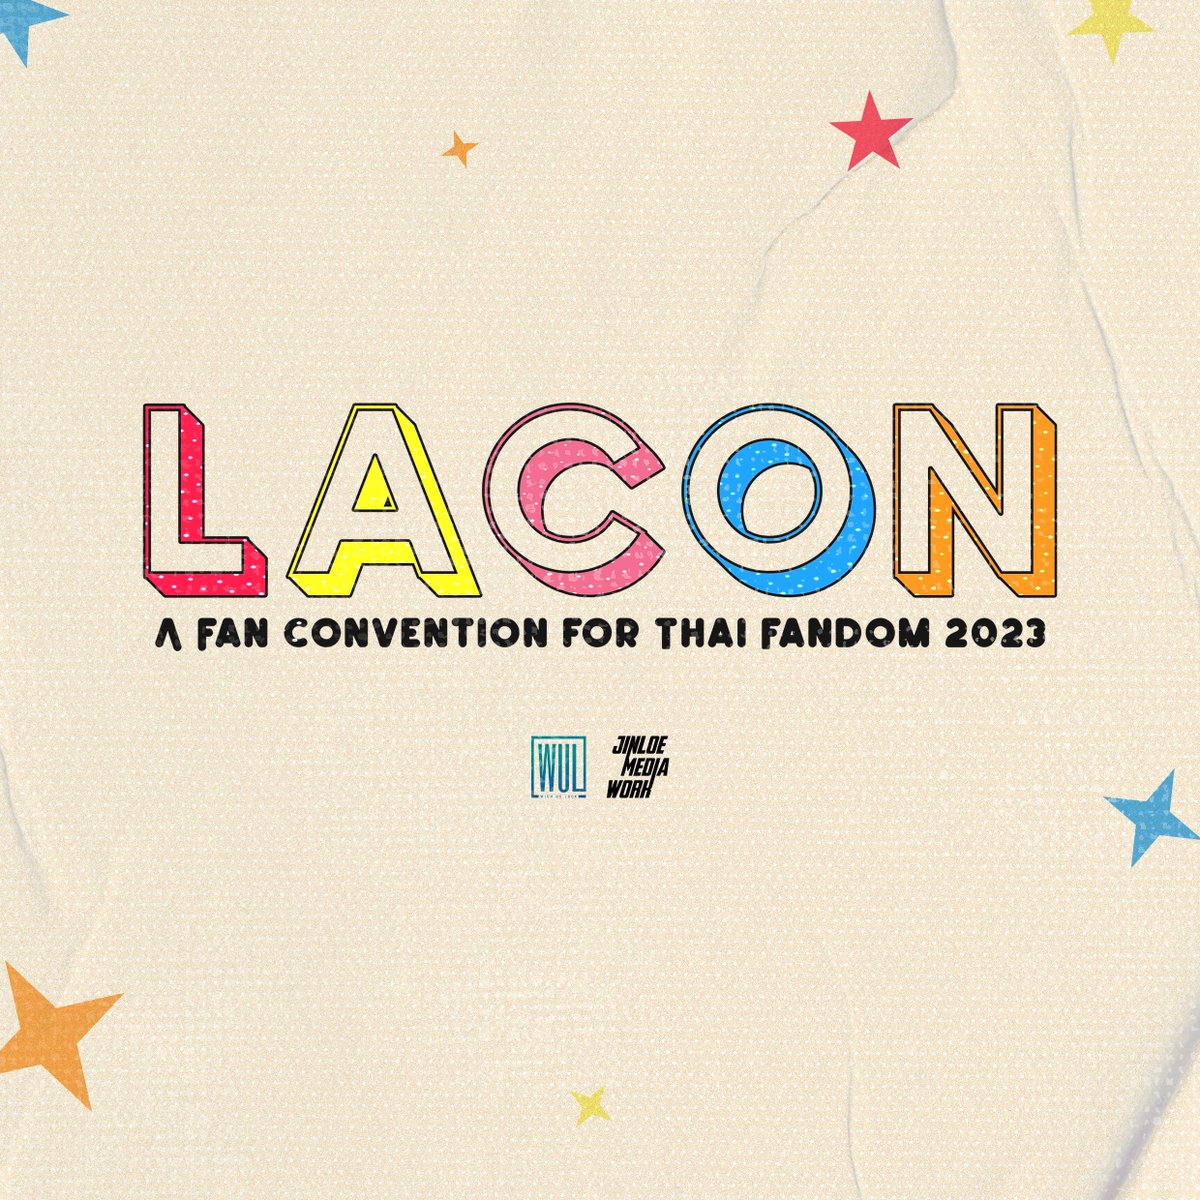 ละคร (lakhon, pronounced [la. kʰɔːn], or lakorn

April 26, 2023, 12 noon.

Soon on Wish Us Luck x Jinloe.

#LaConFanConvention2023
#HitBiteLoveinMNL2023